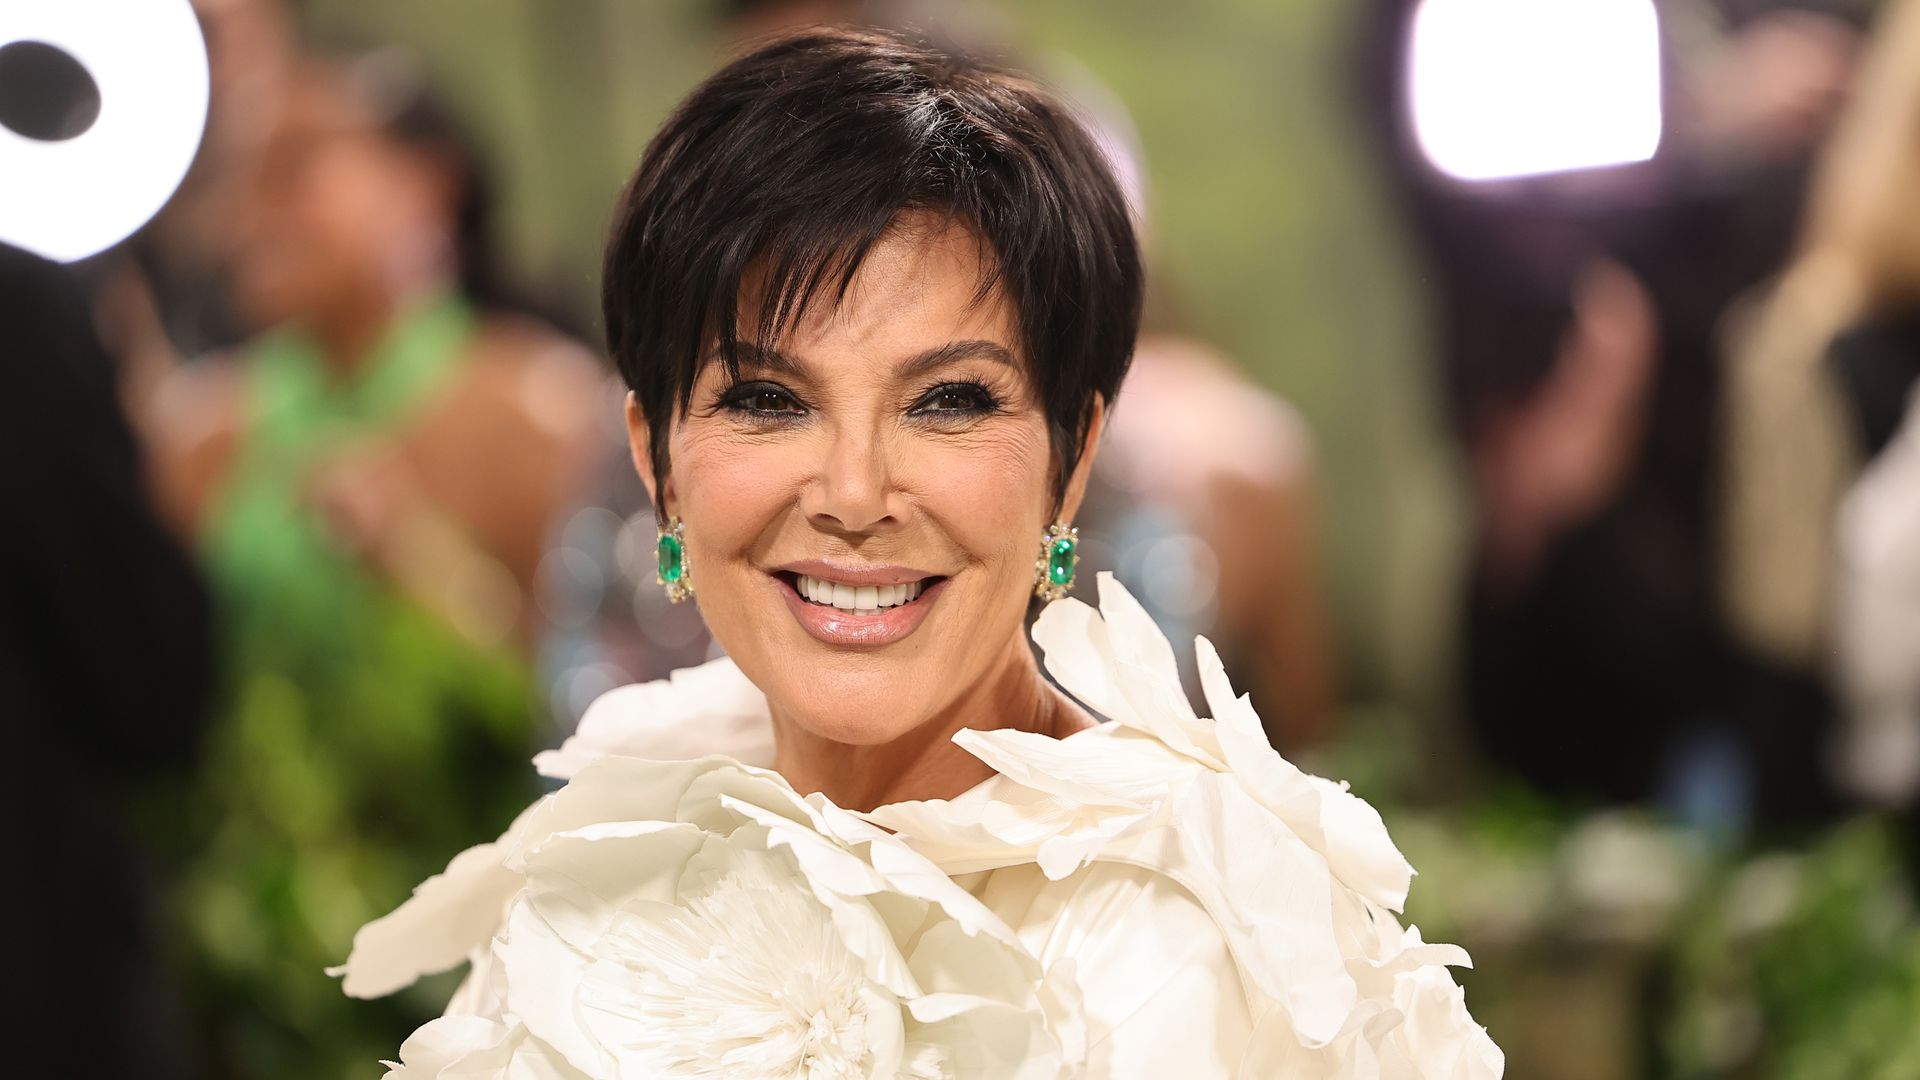 Kris Jenner details devastating fertility struggles in new Kardashians episode